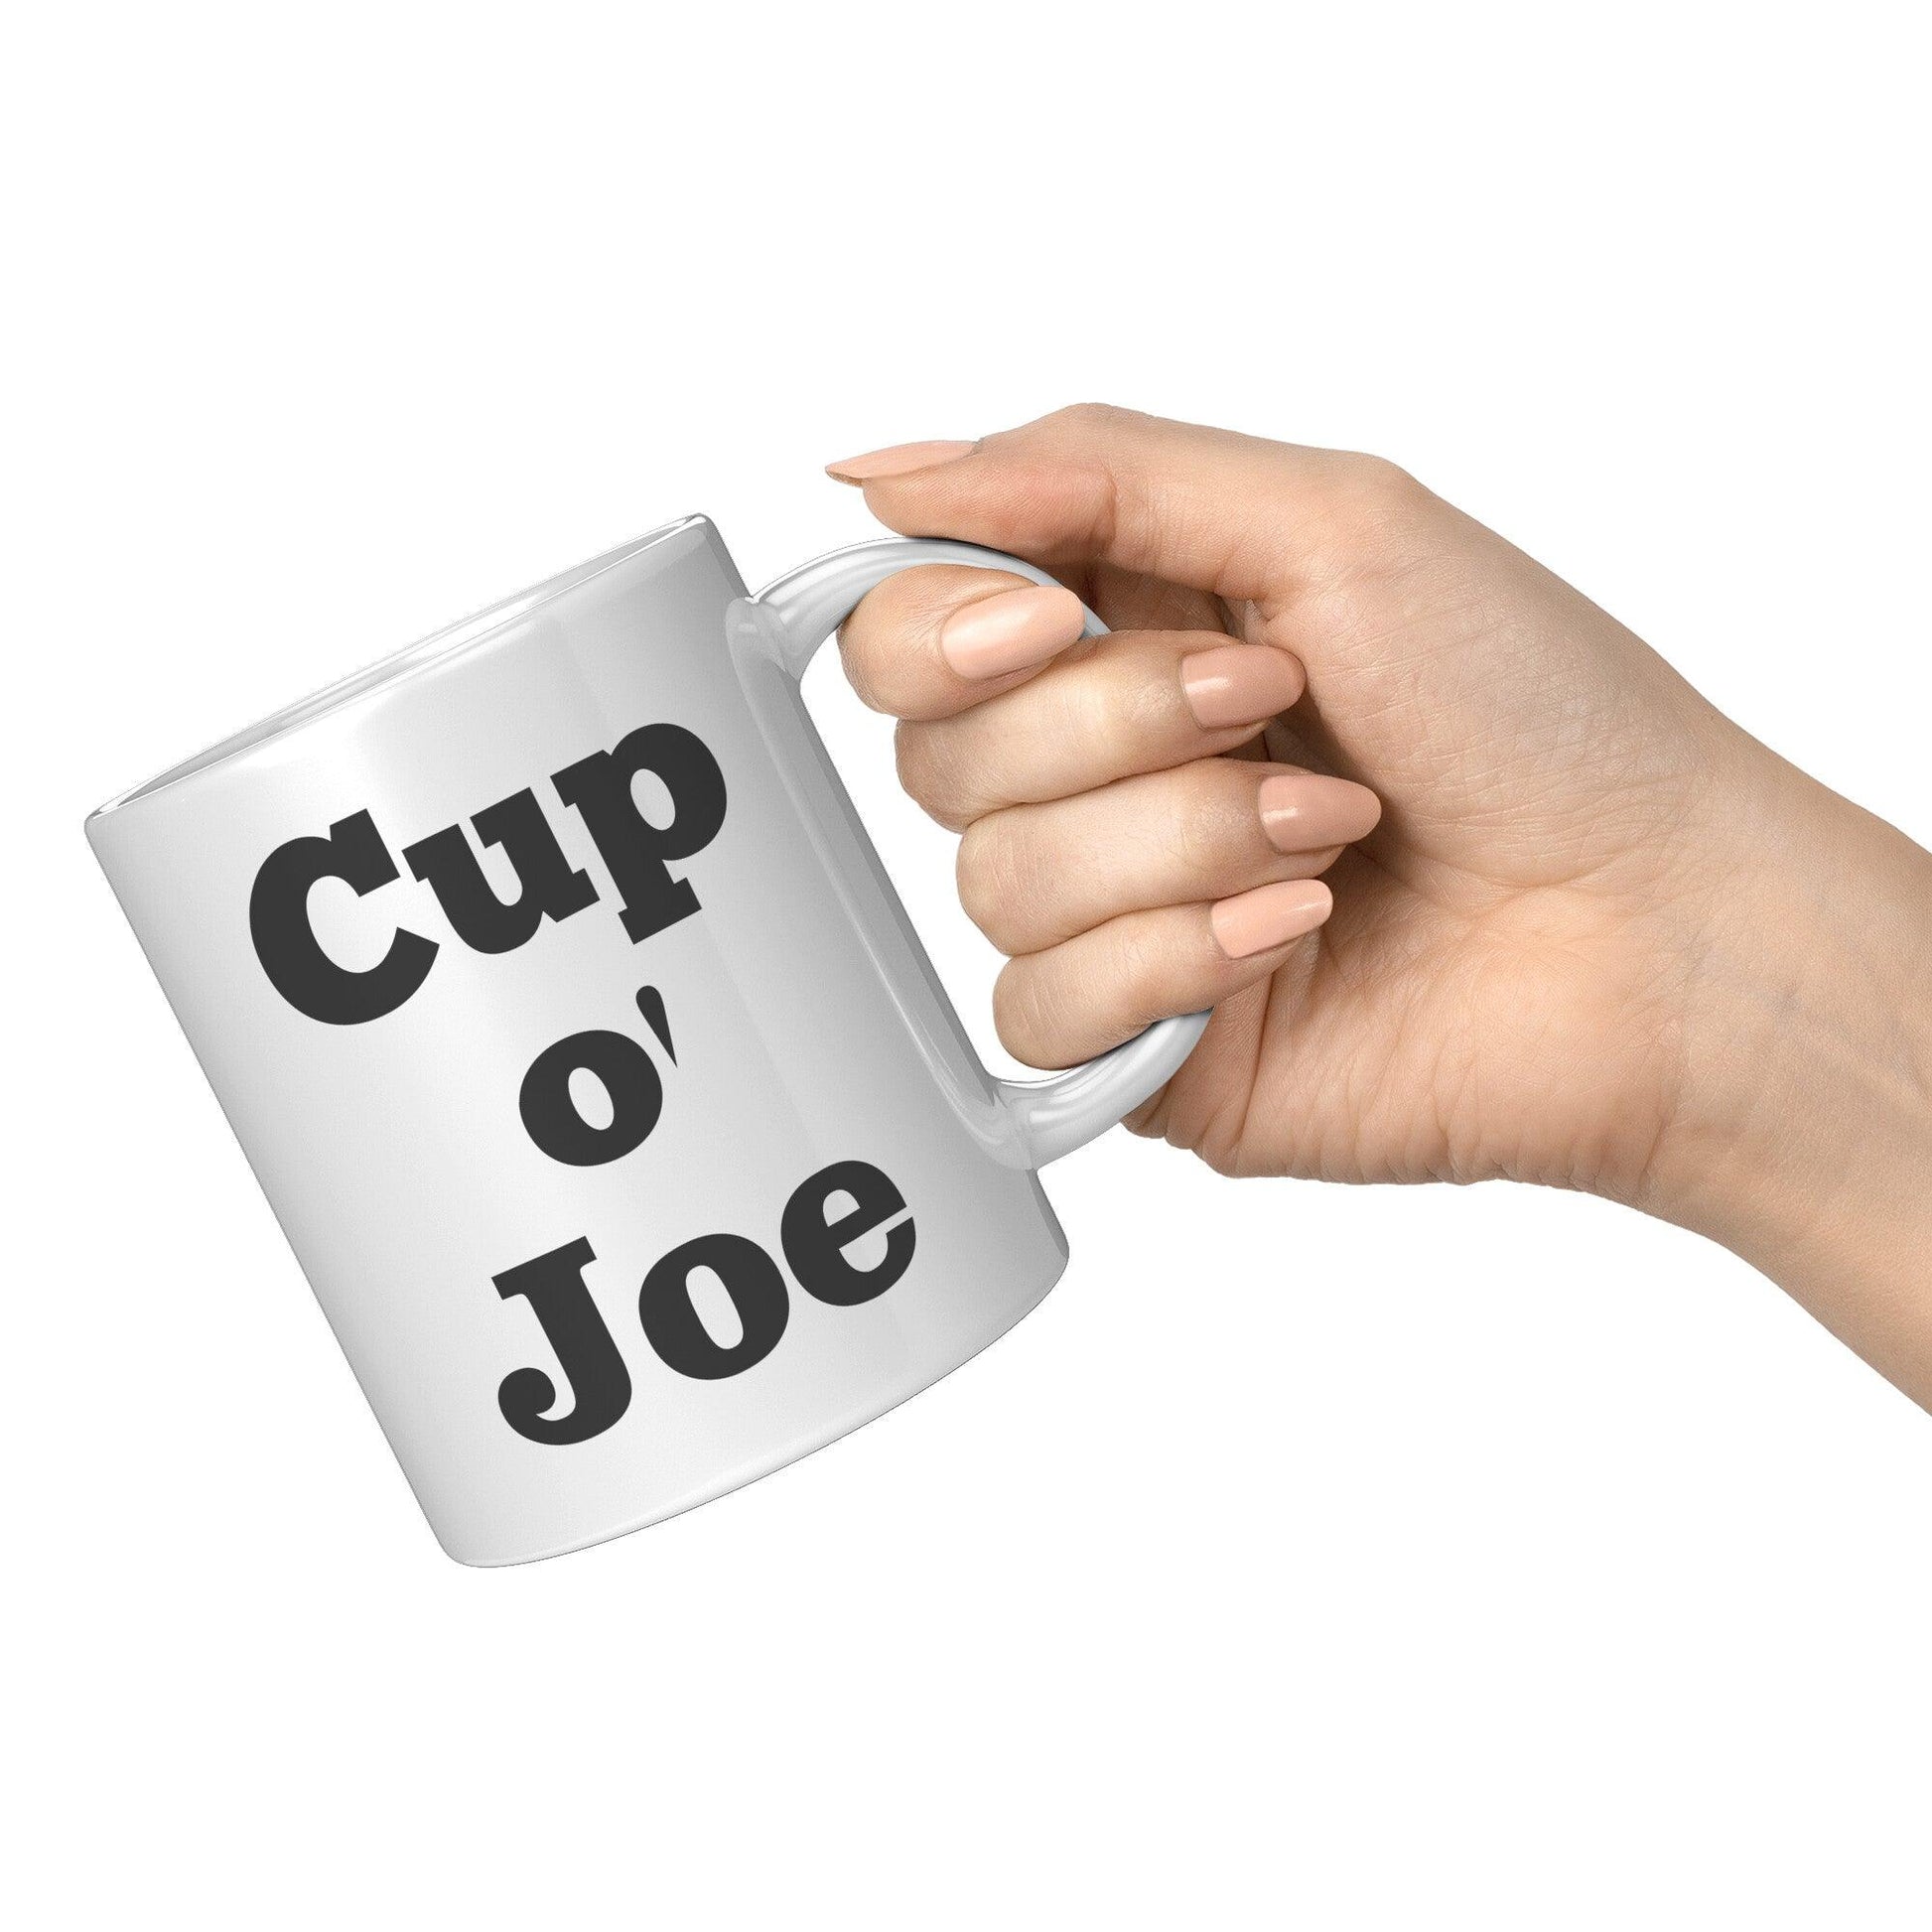 Cup O' Joe Kenda White Mug - TheGivenGet